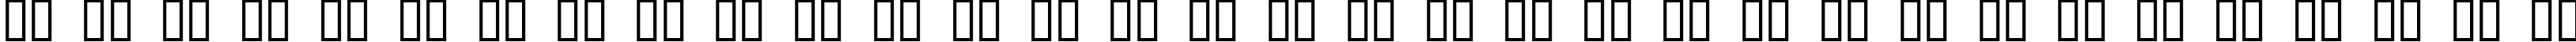 Пример написания русского алфавита шрифтом JI Kaleidoscope Bats 2